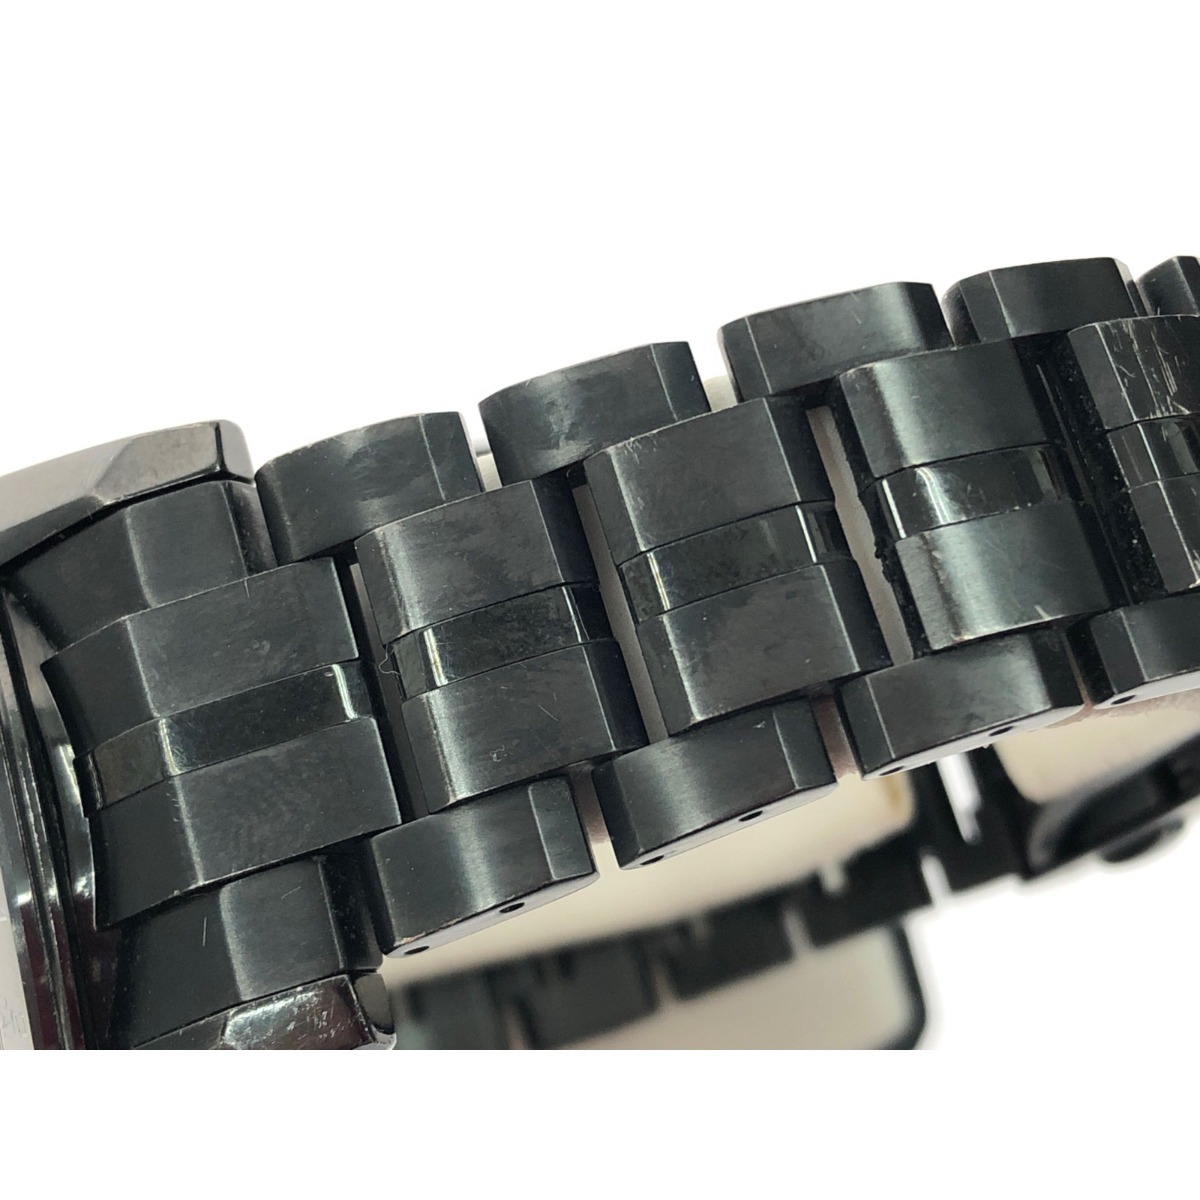 ▼▼ SEIKO セイコー メンズ腕時計 電波ソーラー アストロン チタン 5Xシリーズ デュアルタイム 5x53 0AB0 ブラック やや傷や汚れあり_画像10